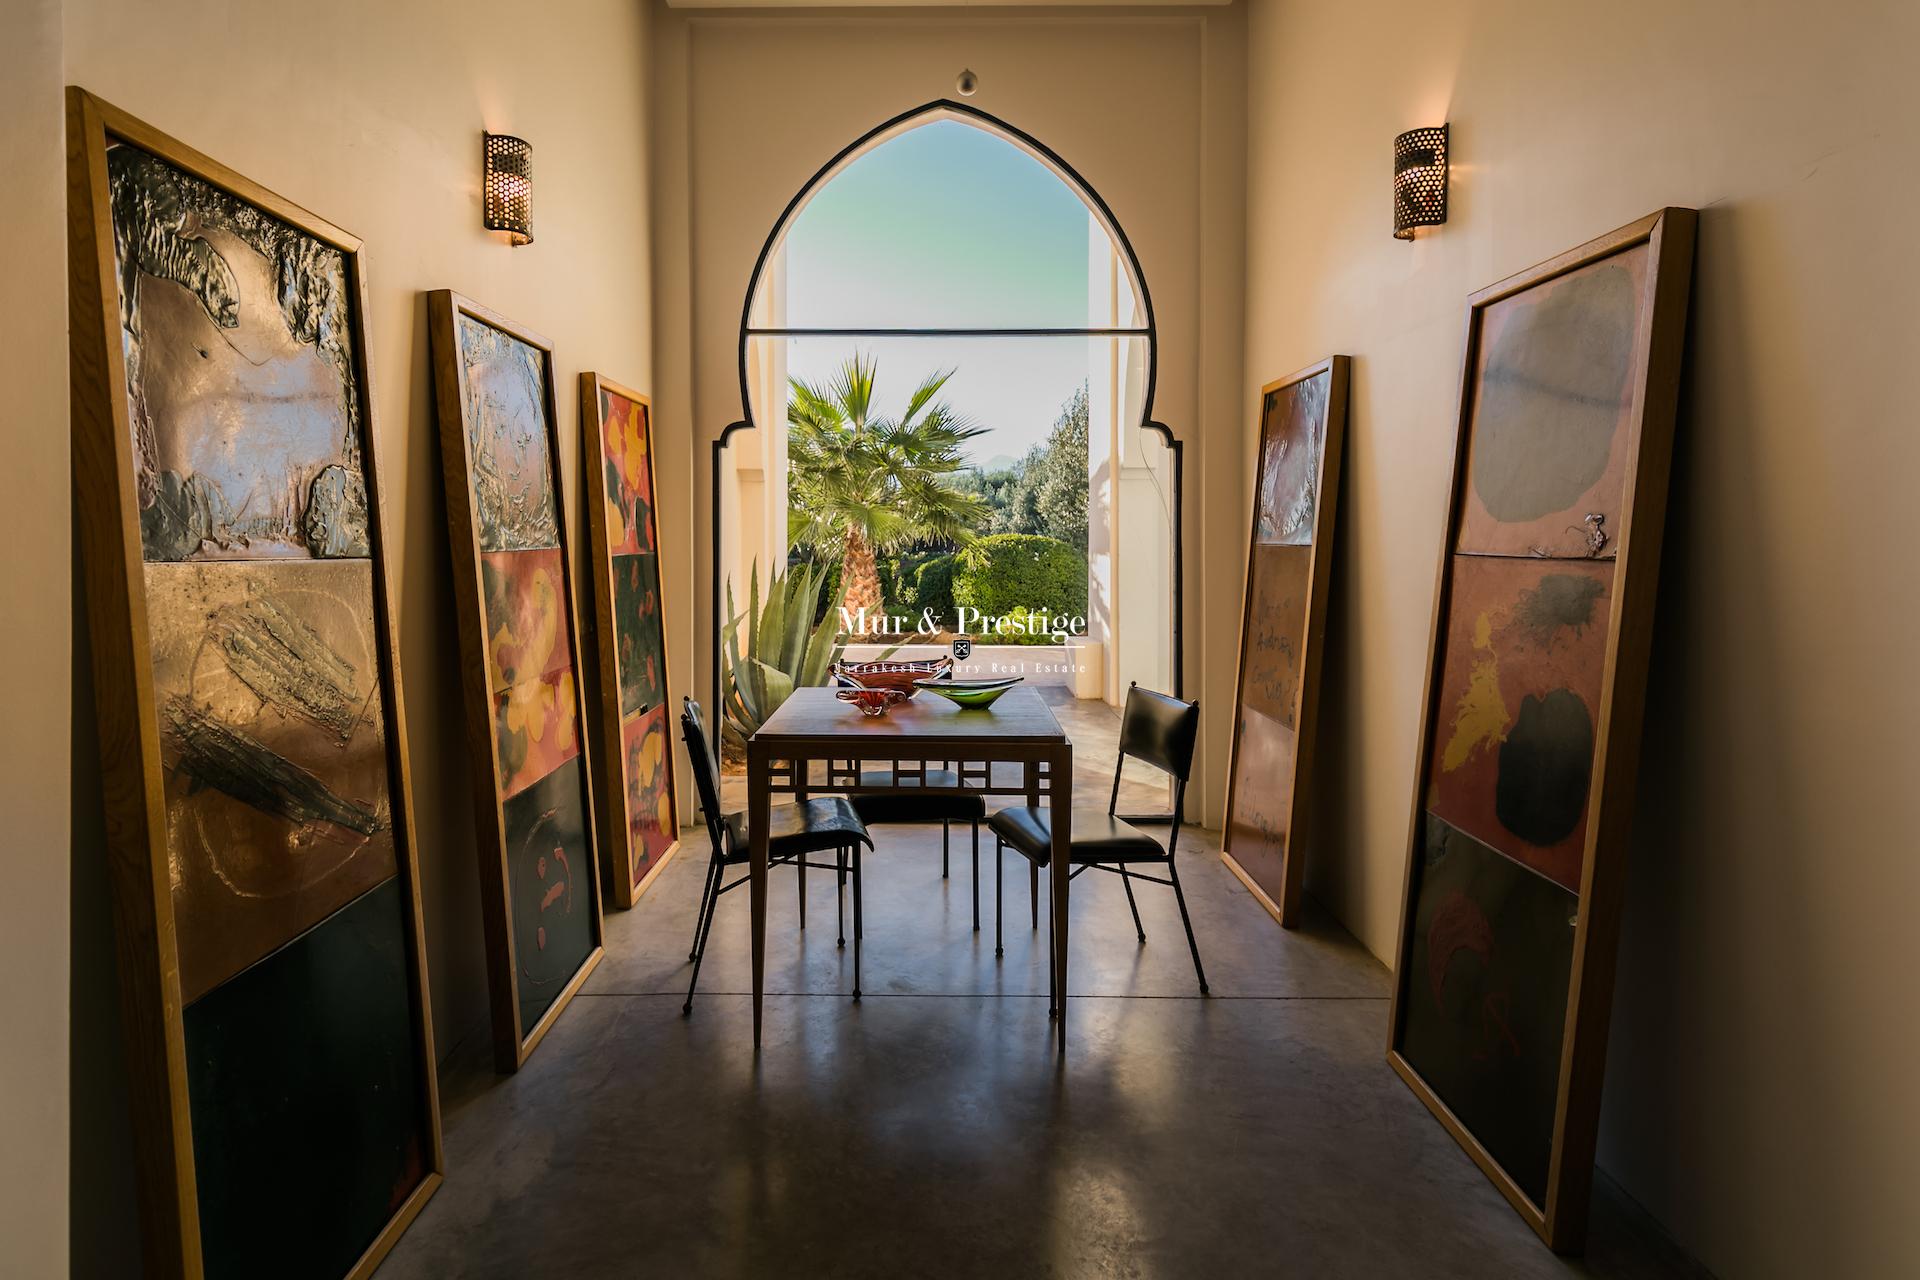 Achat Villa Luxe Marrakech – Vue époustouflante sur l’atlas